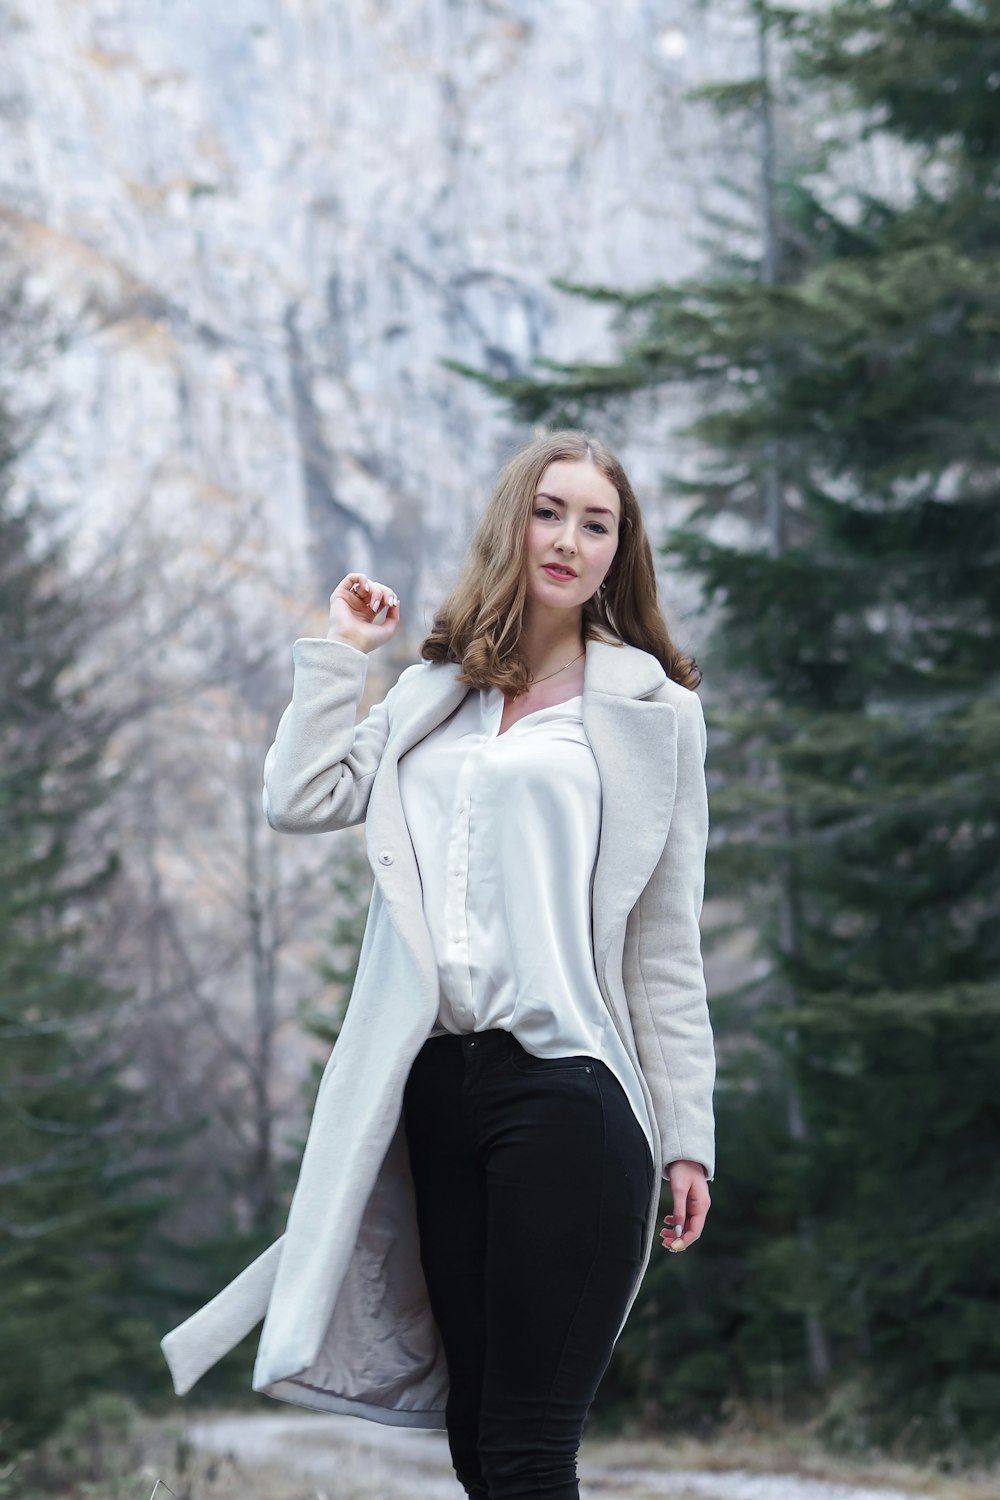 Foto Una mujer con pantalones negros y una chaqueta blanca – Imagen  Provincia Autónoma de Bolzano – Tirol del Sur gratis en Unsplash